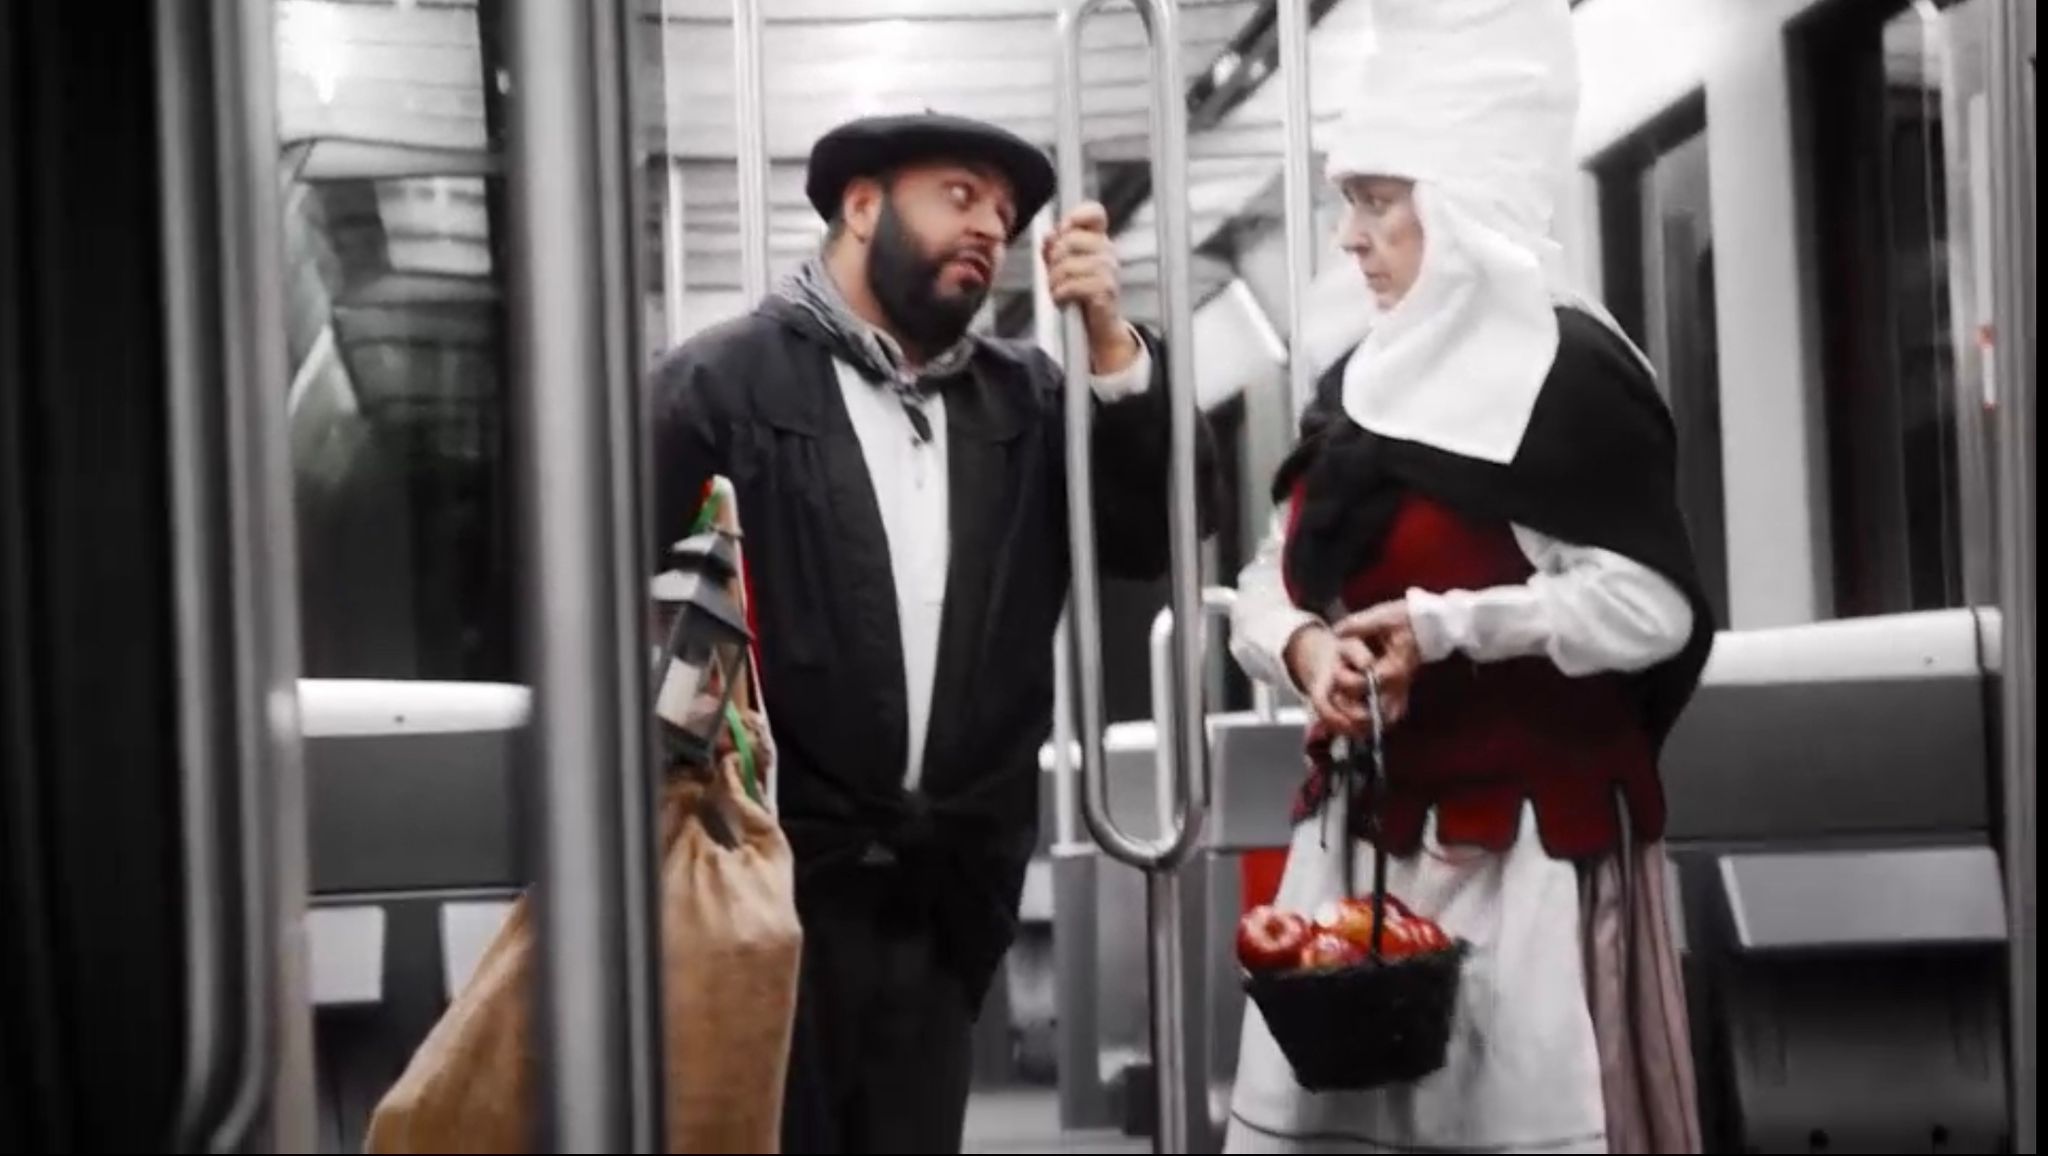 Publicidad metro bilbao campaña de comunicación felicitación Metro Navidad Olentzero - spot tv